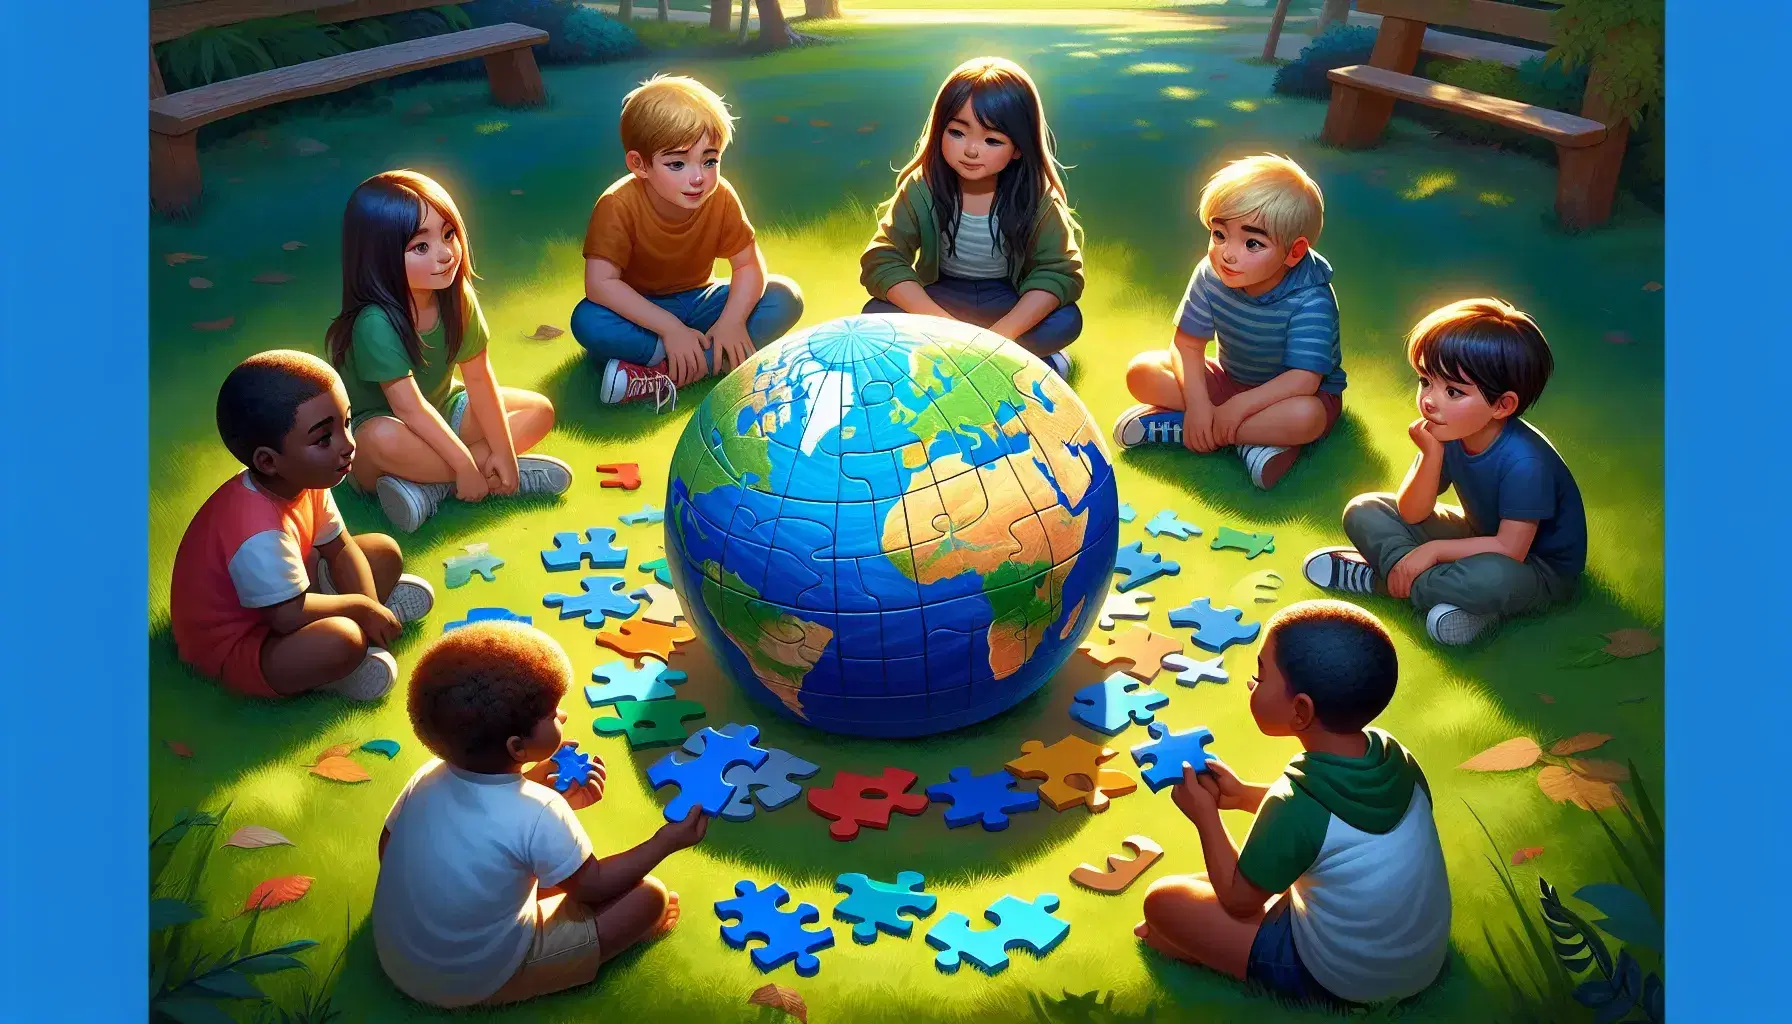 Bambini di diverse etnie collaborano all'aperto per assemblare un puzzle a forma di globo, in un'atmosfera serena e soleggiata.